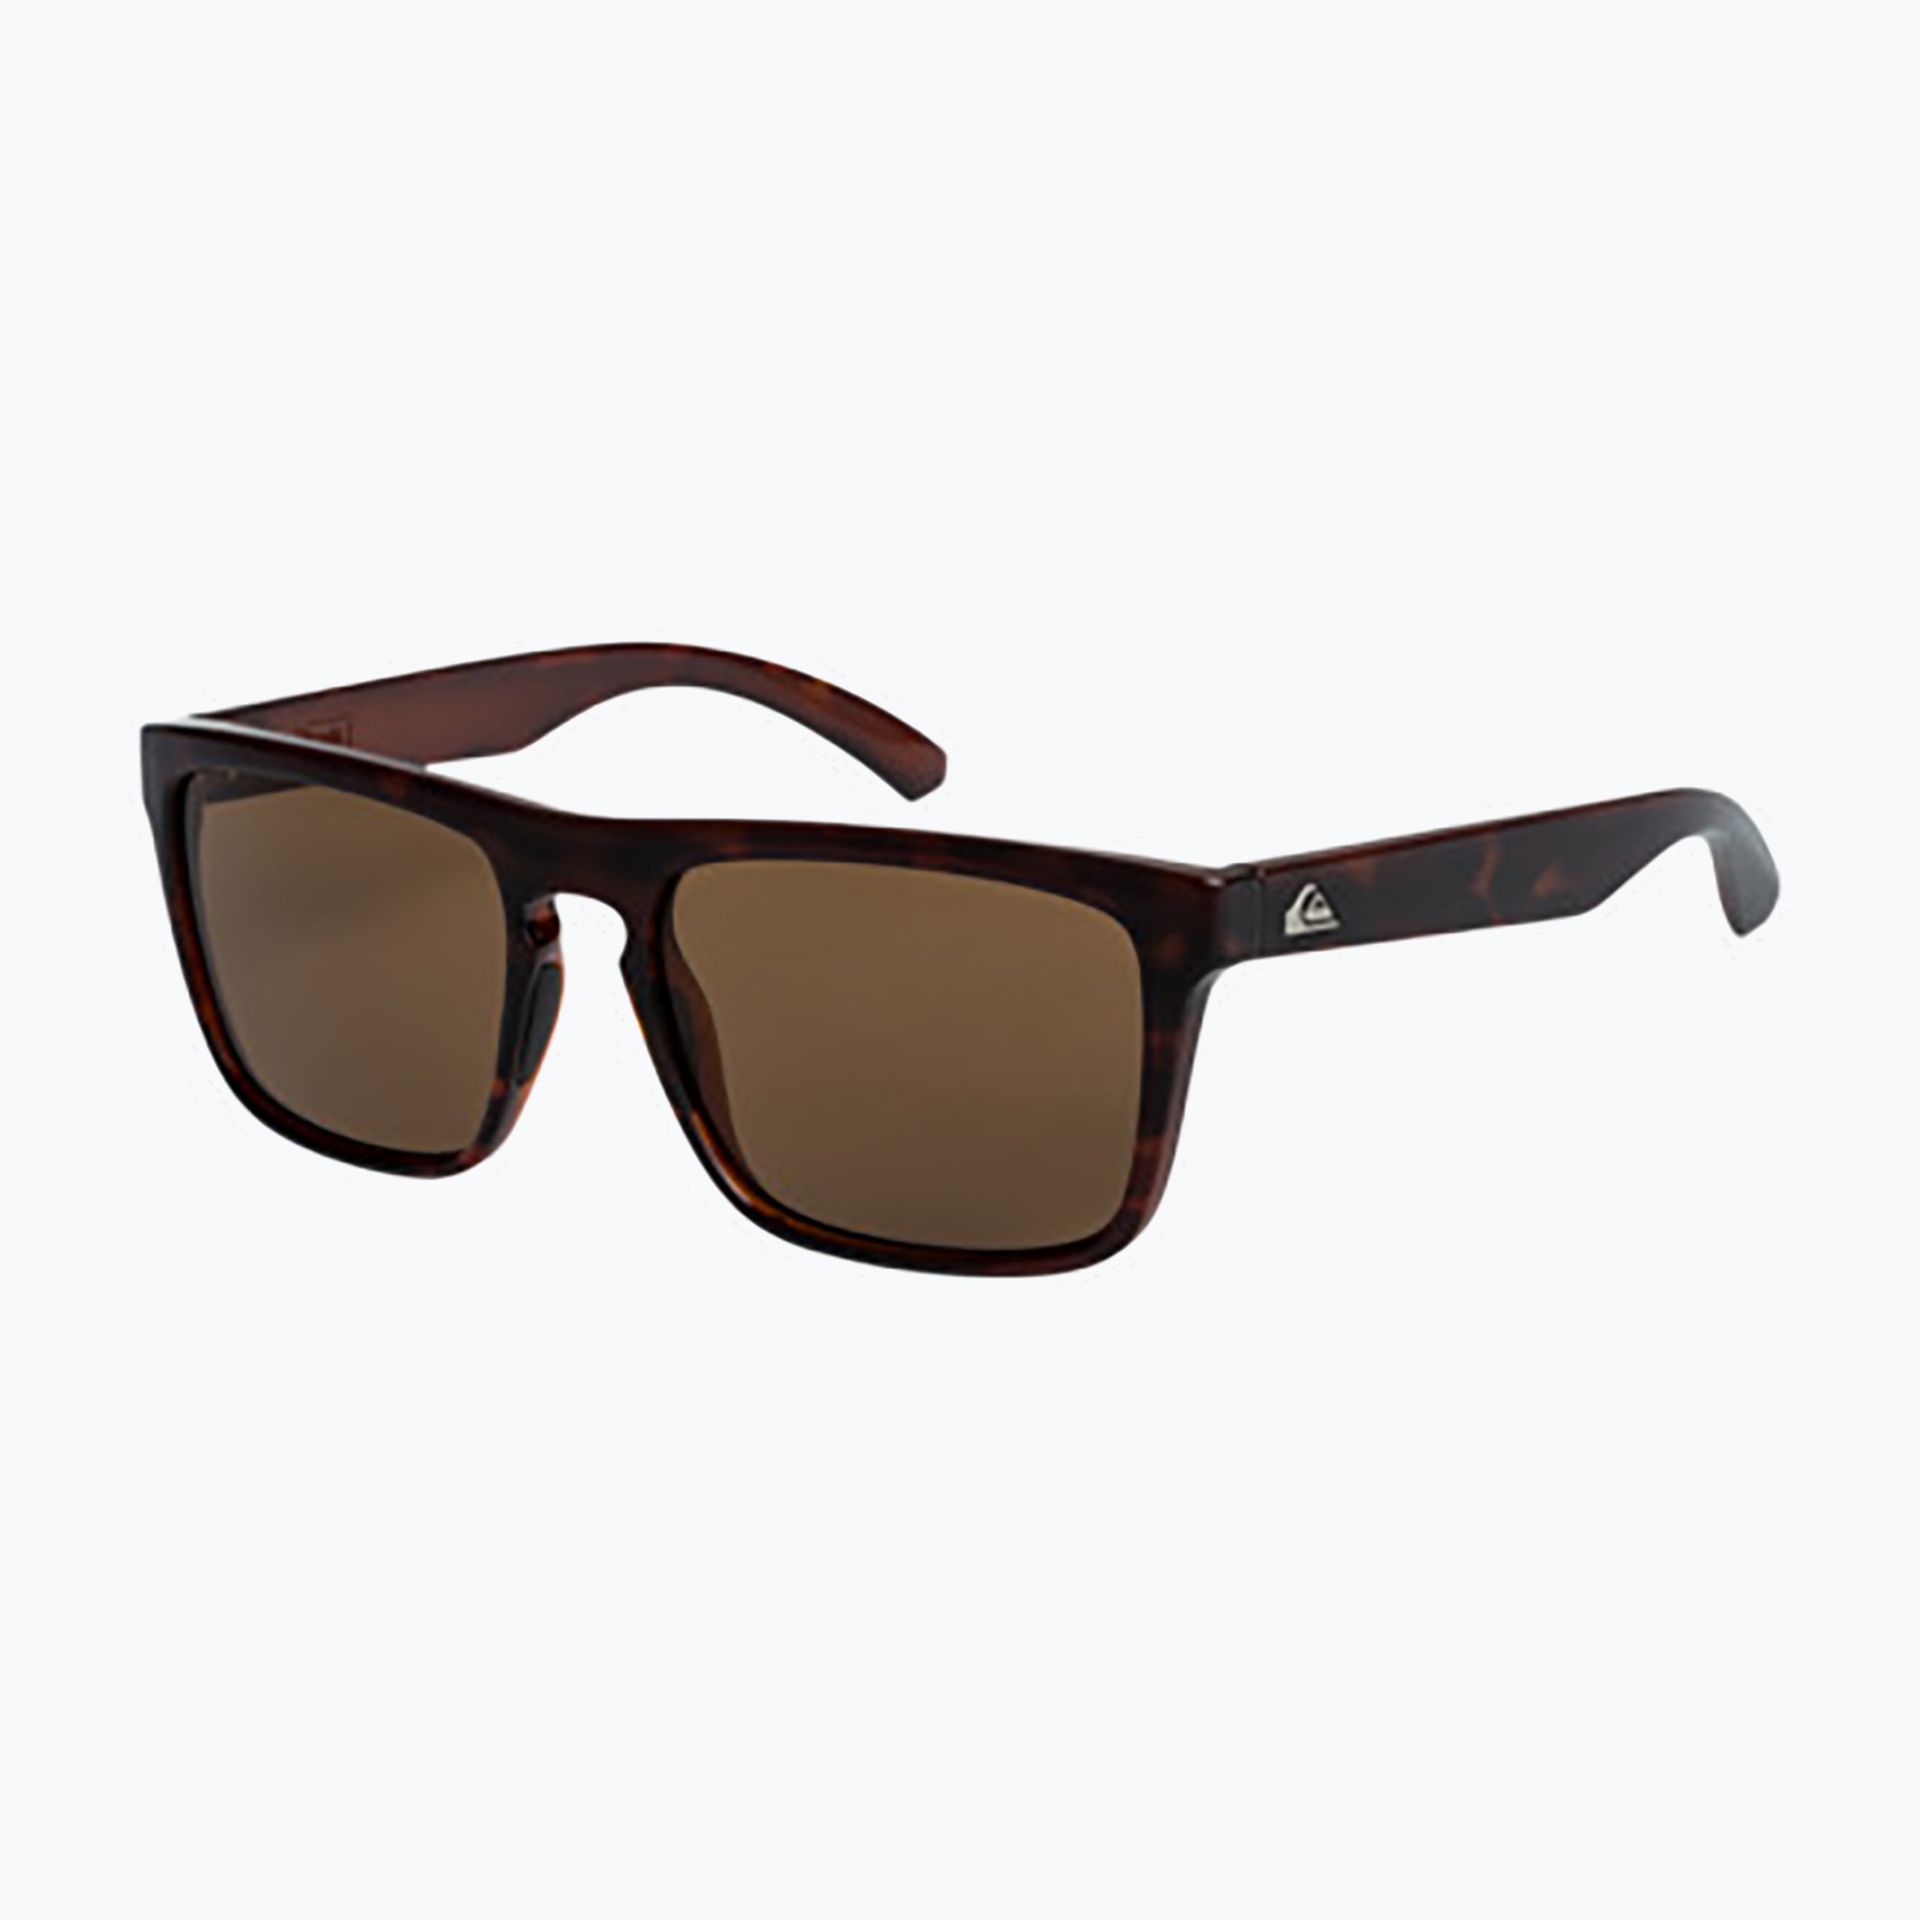 Okulary przeciwsłoneczne męskie Quiksilver Ferris brown tortoise brown | WYSYŁKA W 24H | 30 DNI NA ZWROT